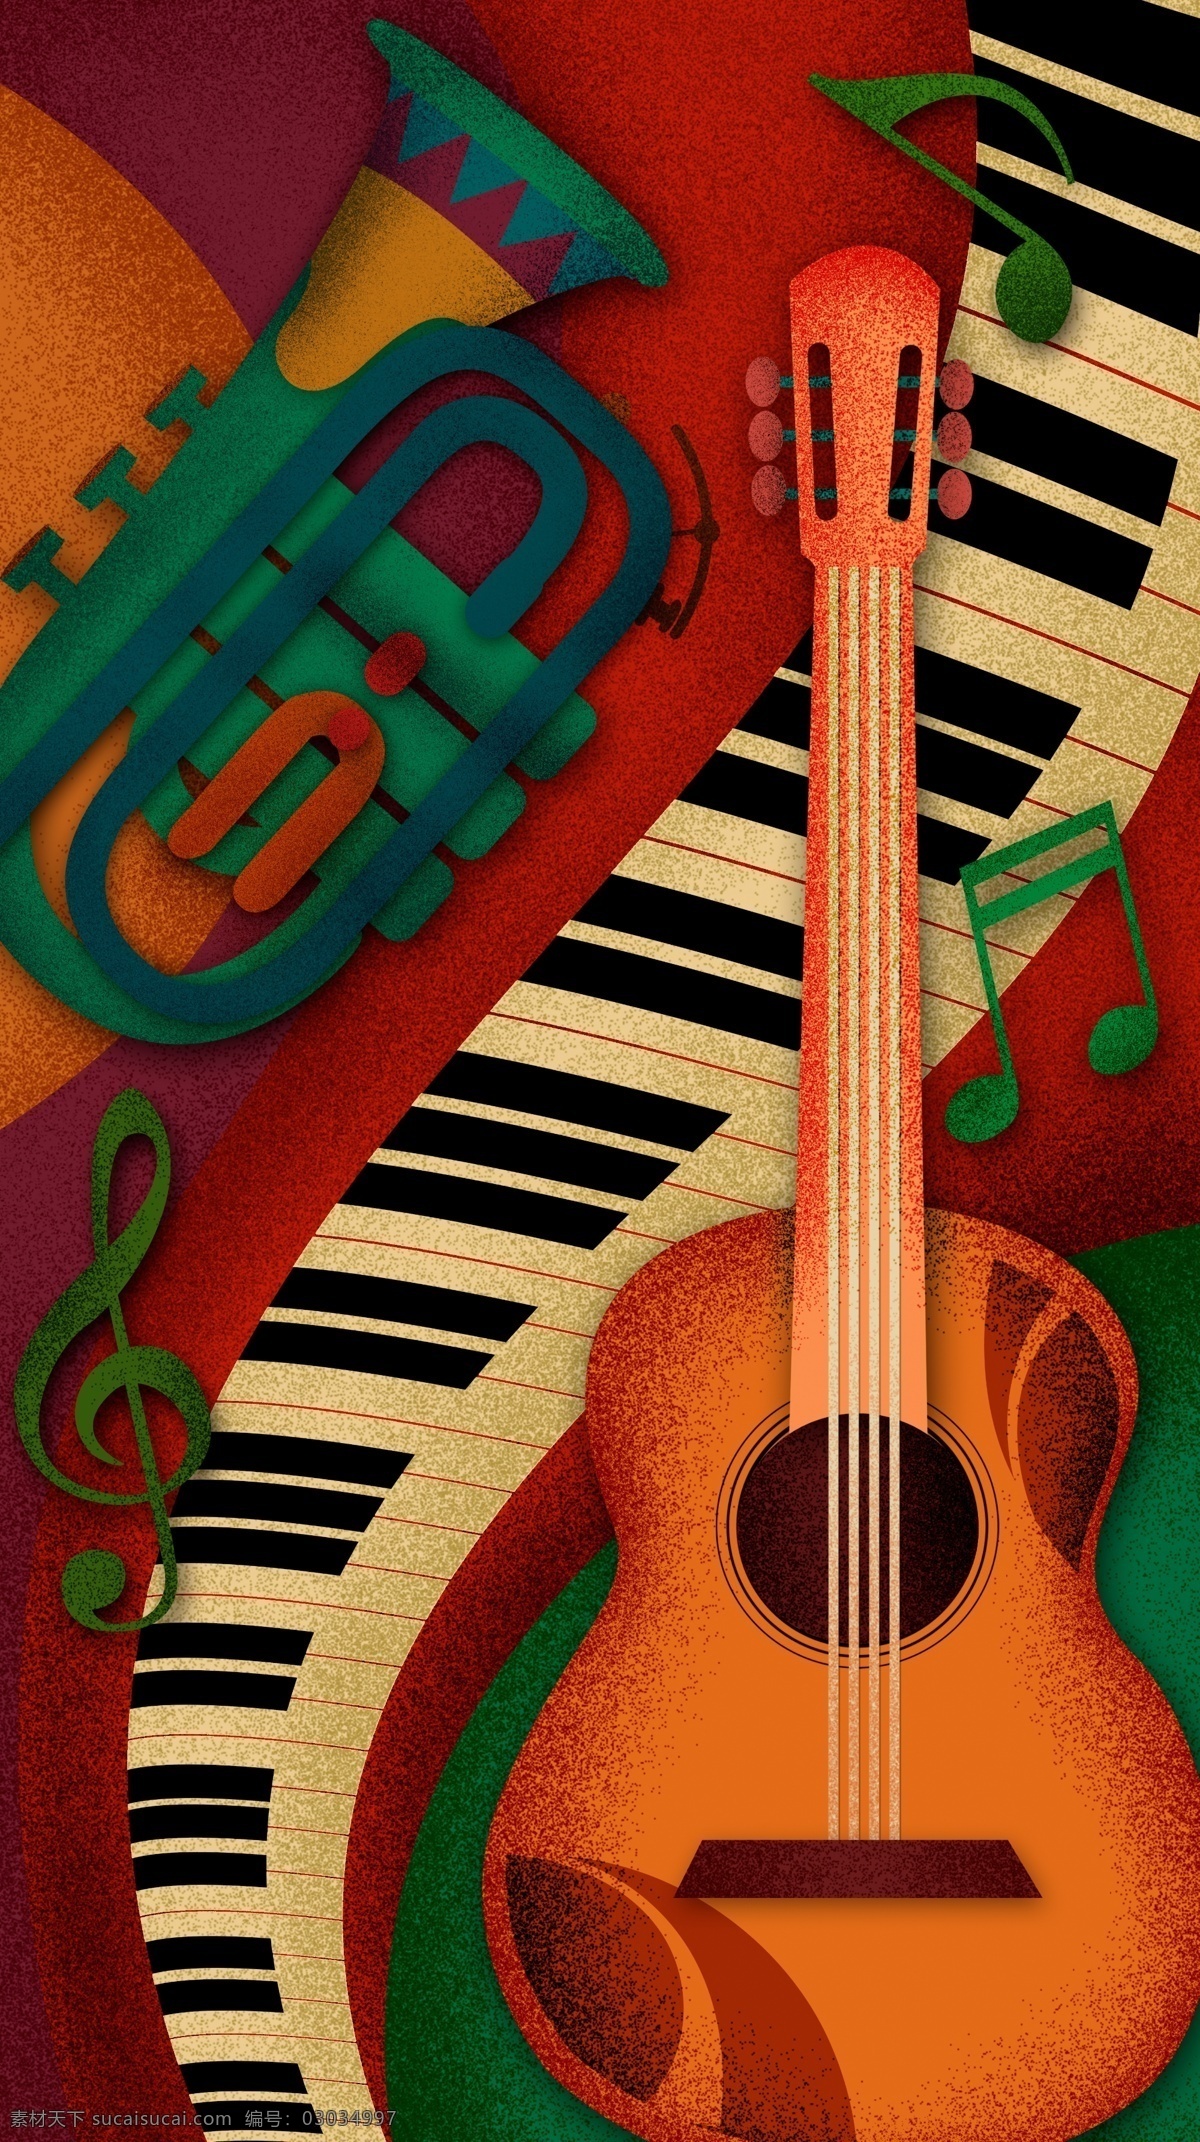 乐器 背景 分层 音乐艺术 吉它 钢琴 乐符 花纹 底纹 背景素材 音乐舞蹈 文化艺术 psd素材